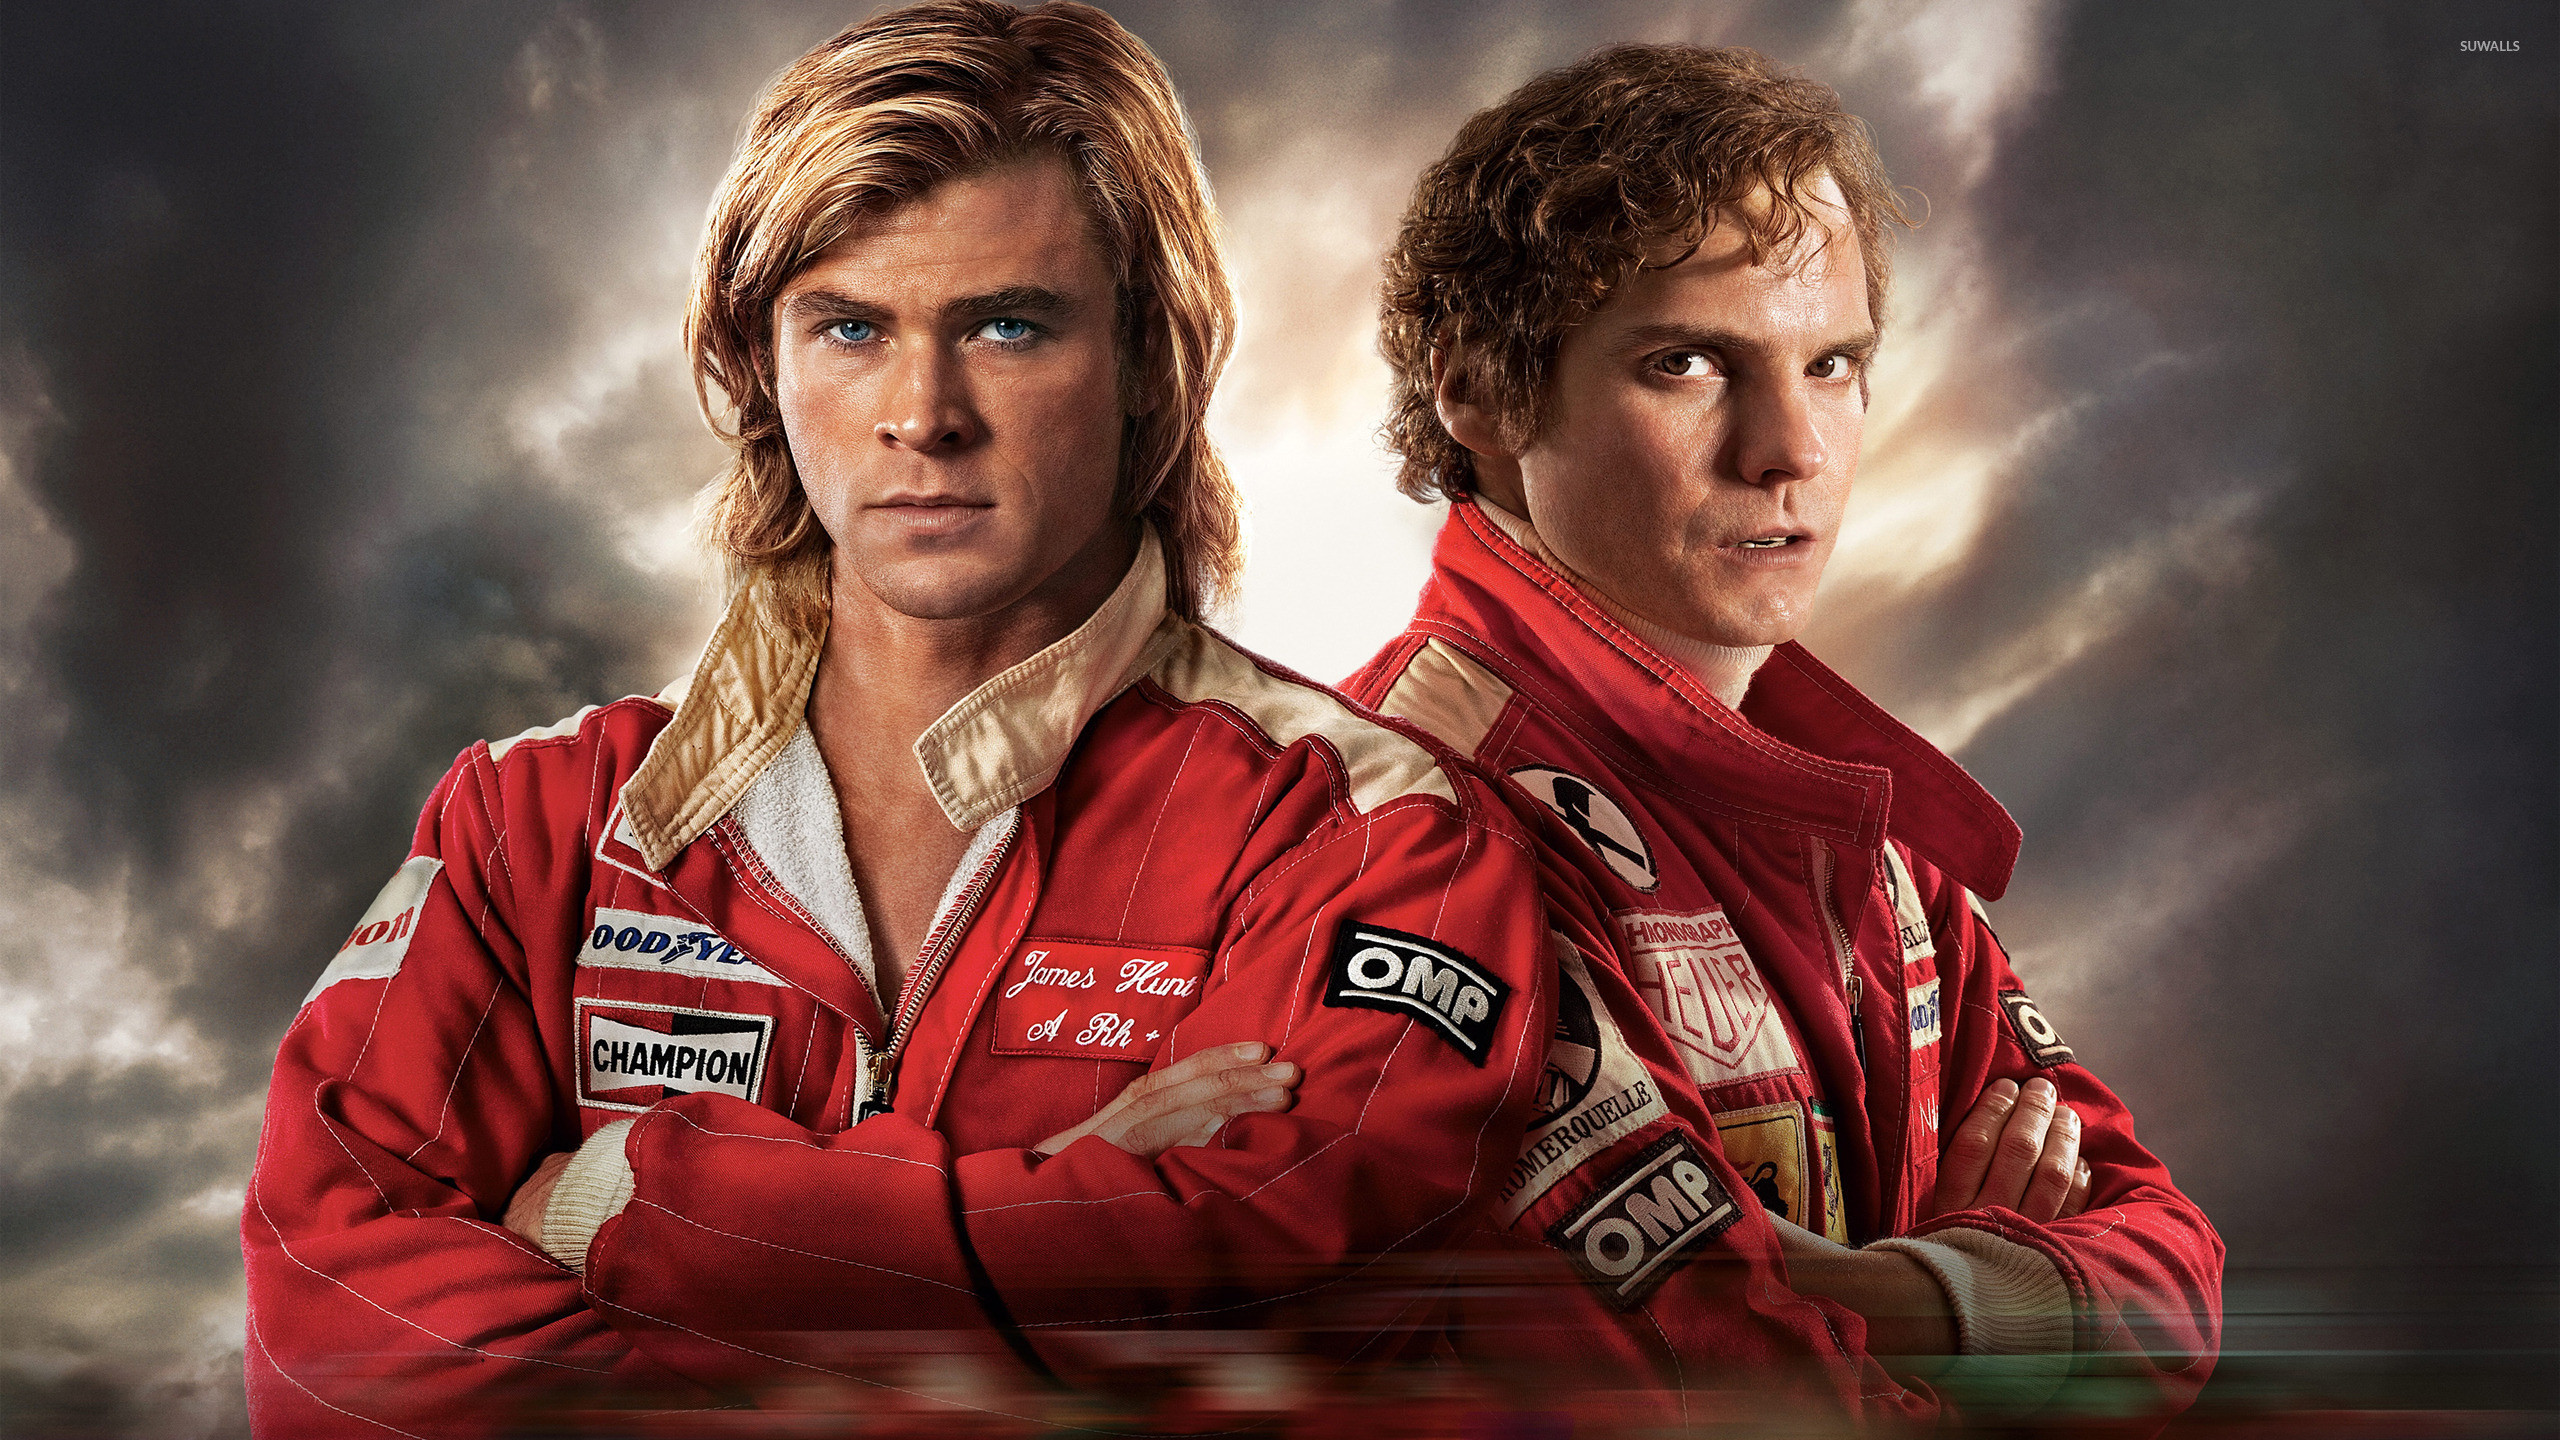 2560x1440 James Hunt and Niki Lauda - Rush wallpaper